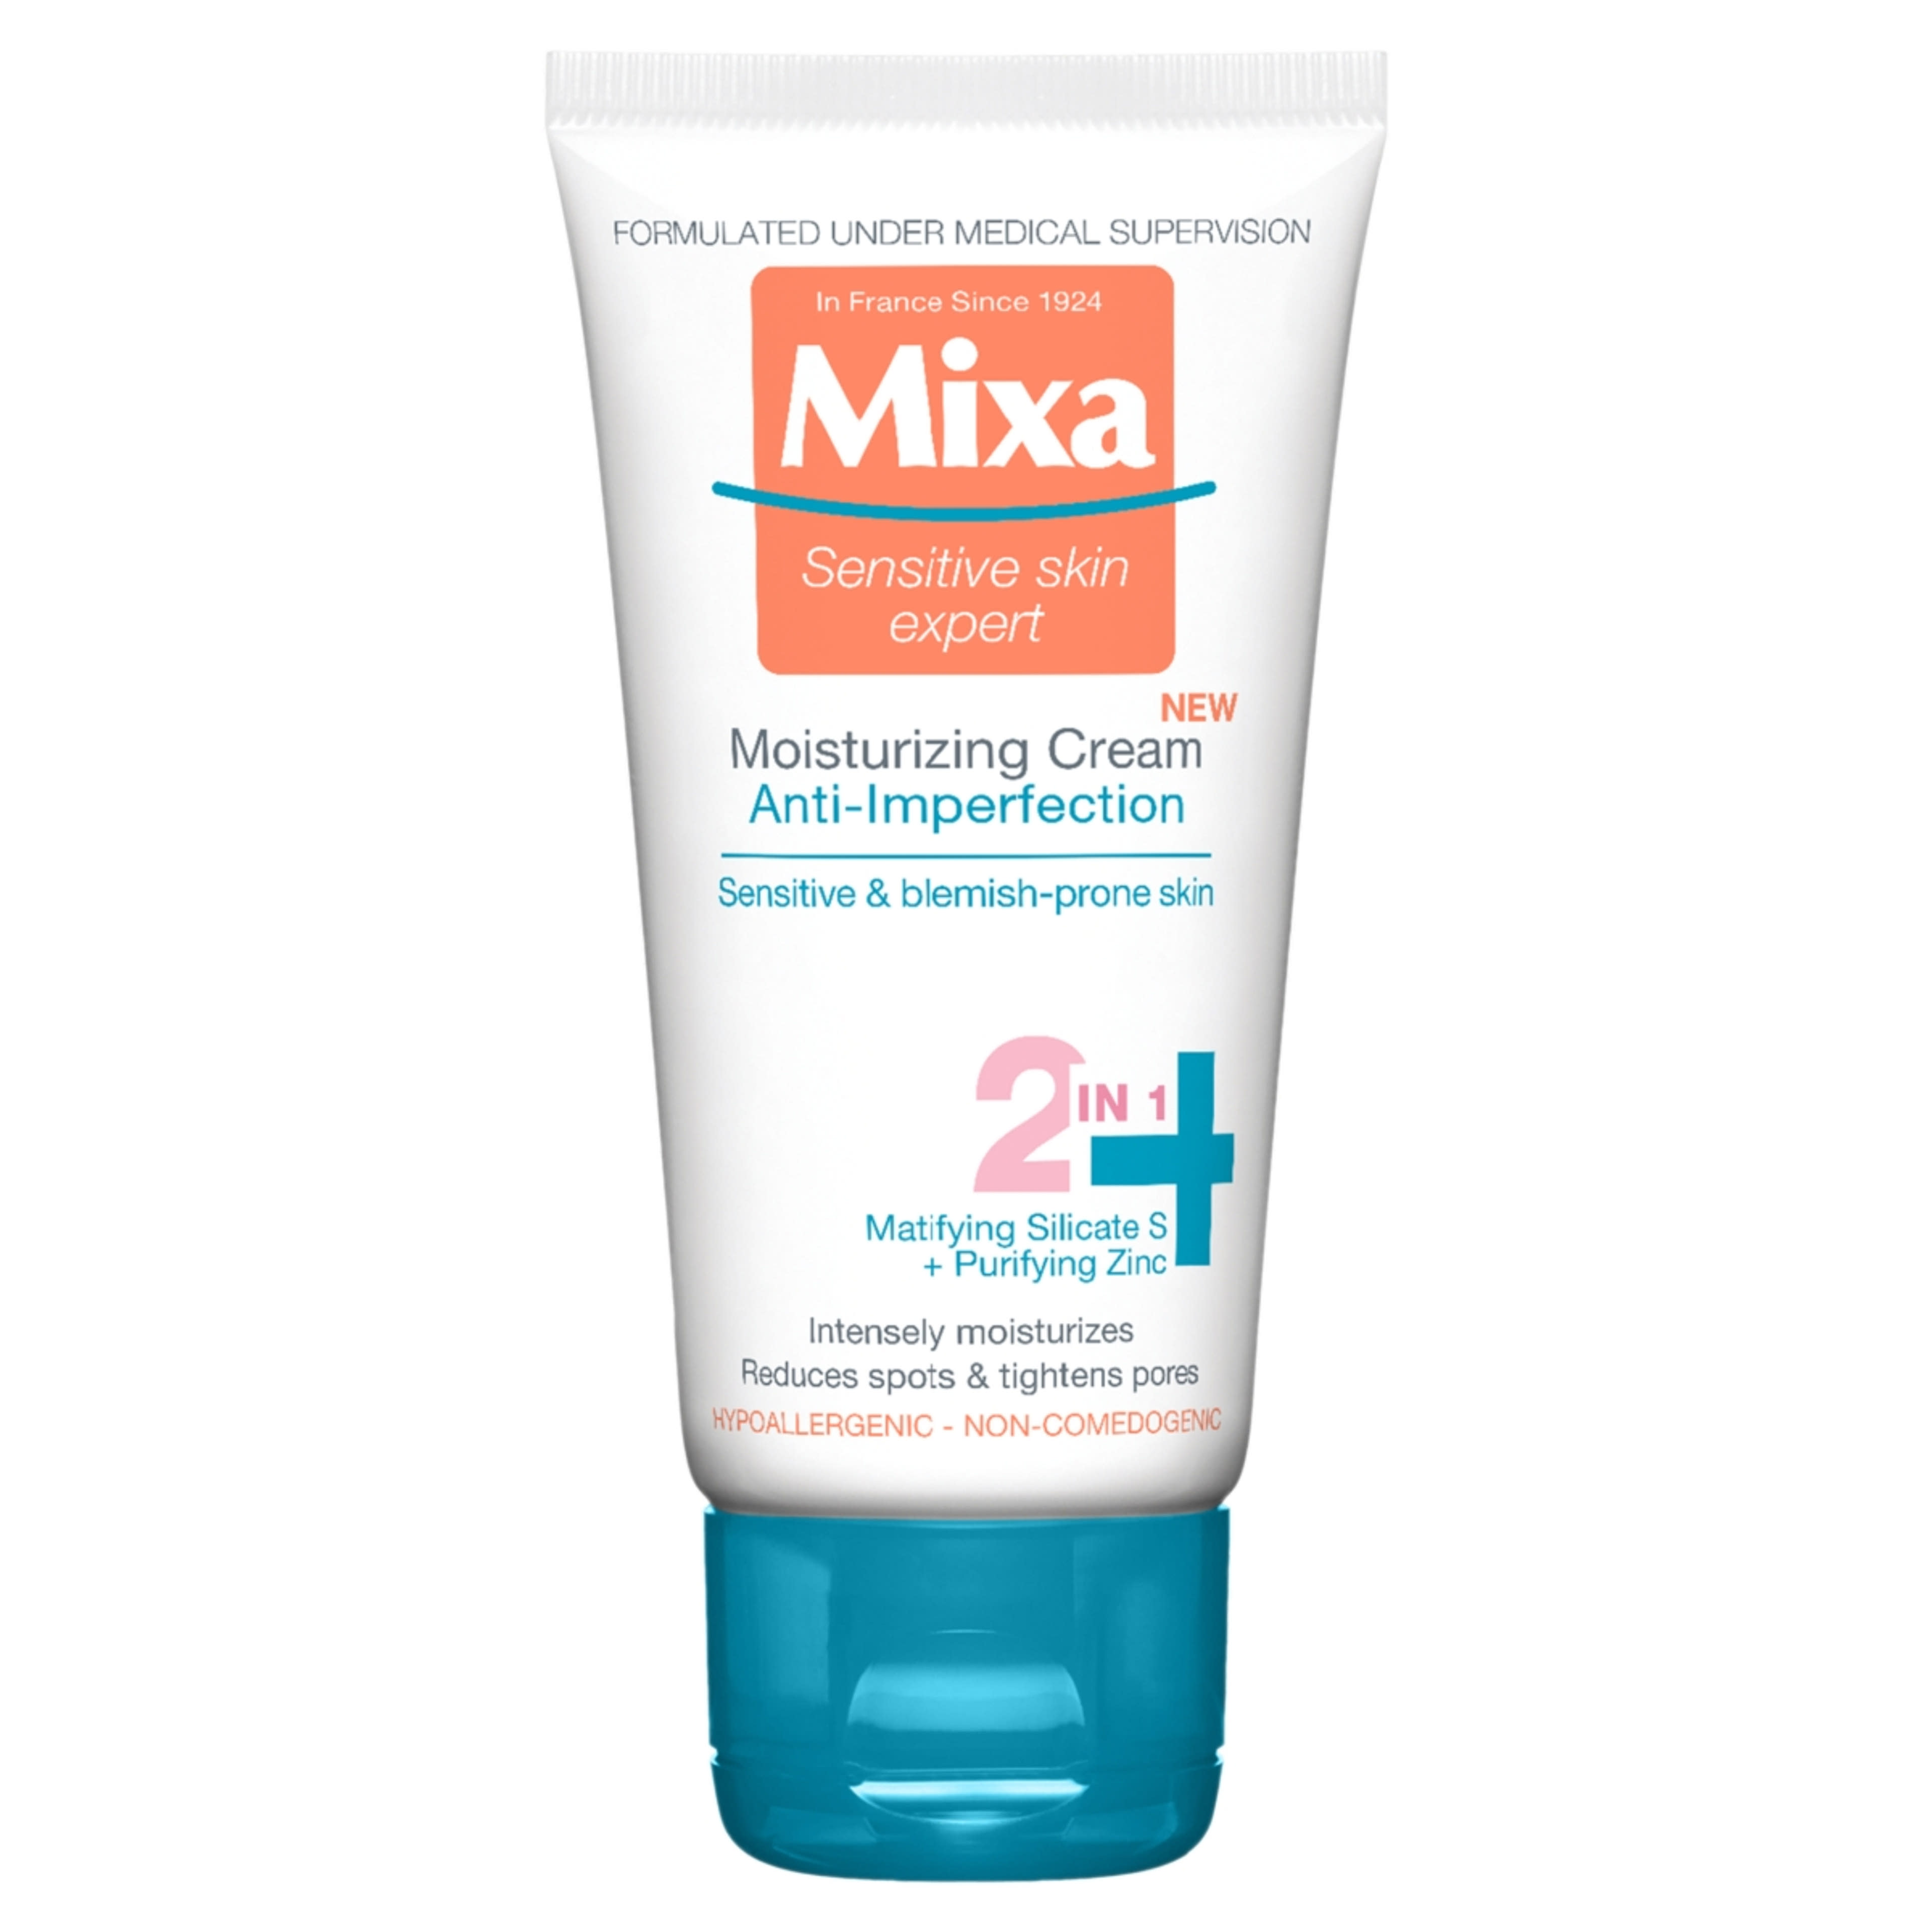 Mixa Anti-Imperfection hidratáló krém 2in1 bőrhibákra hajlamos bőrre - 50 ml